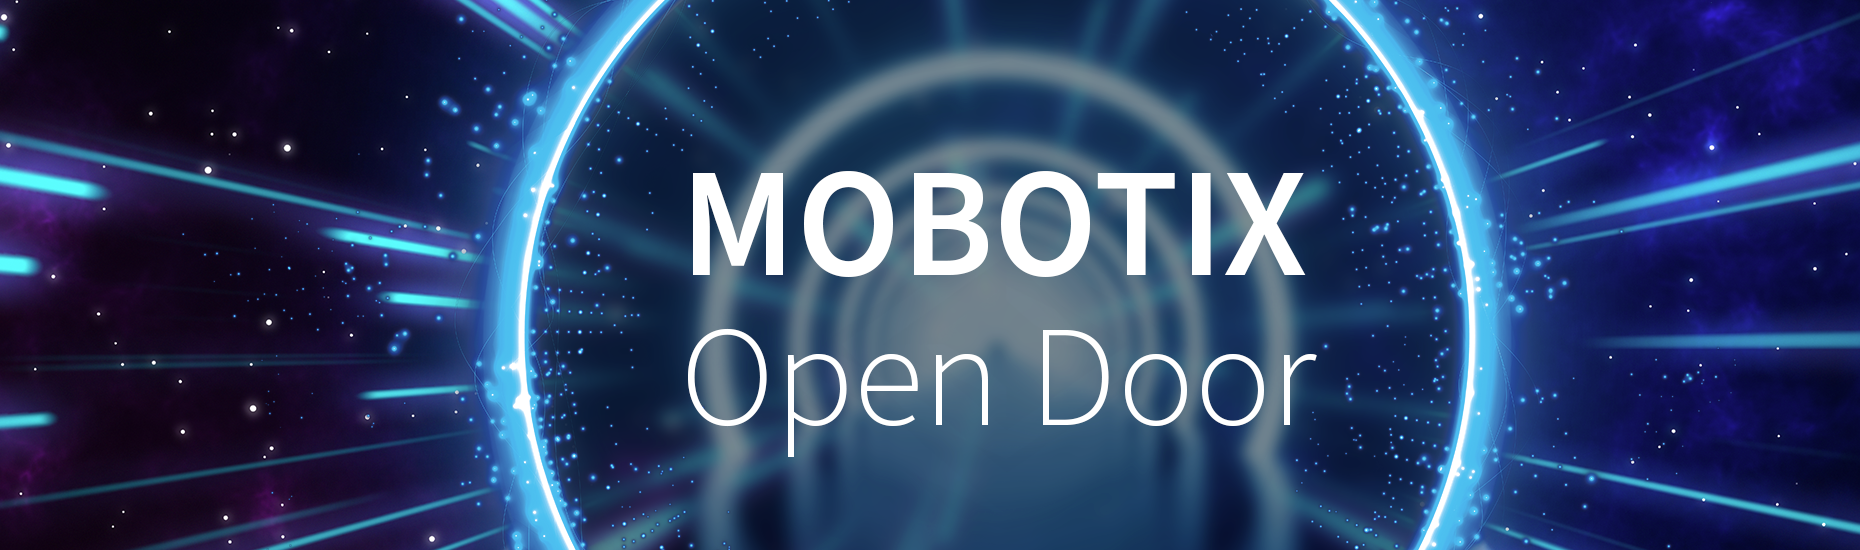 MOBOTIX Open Door